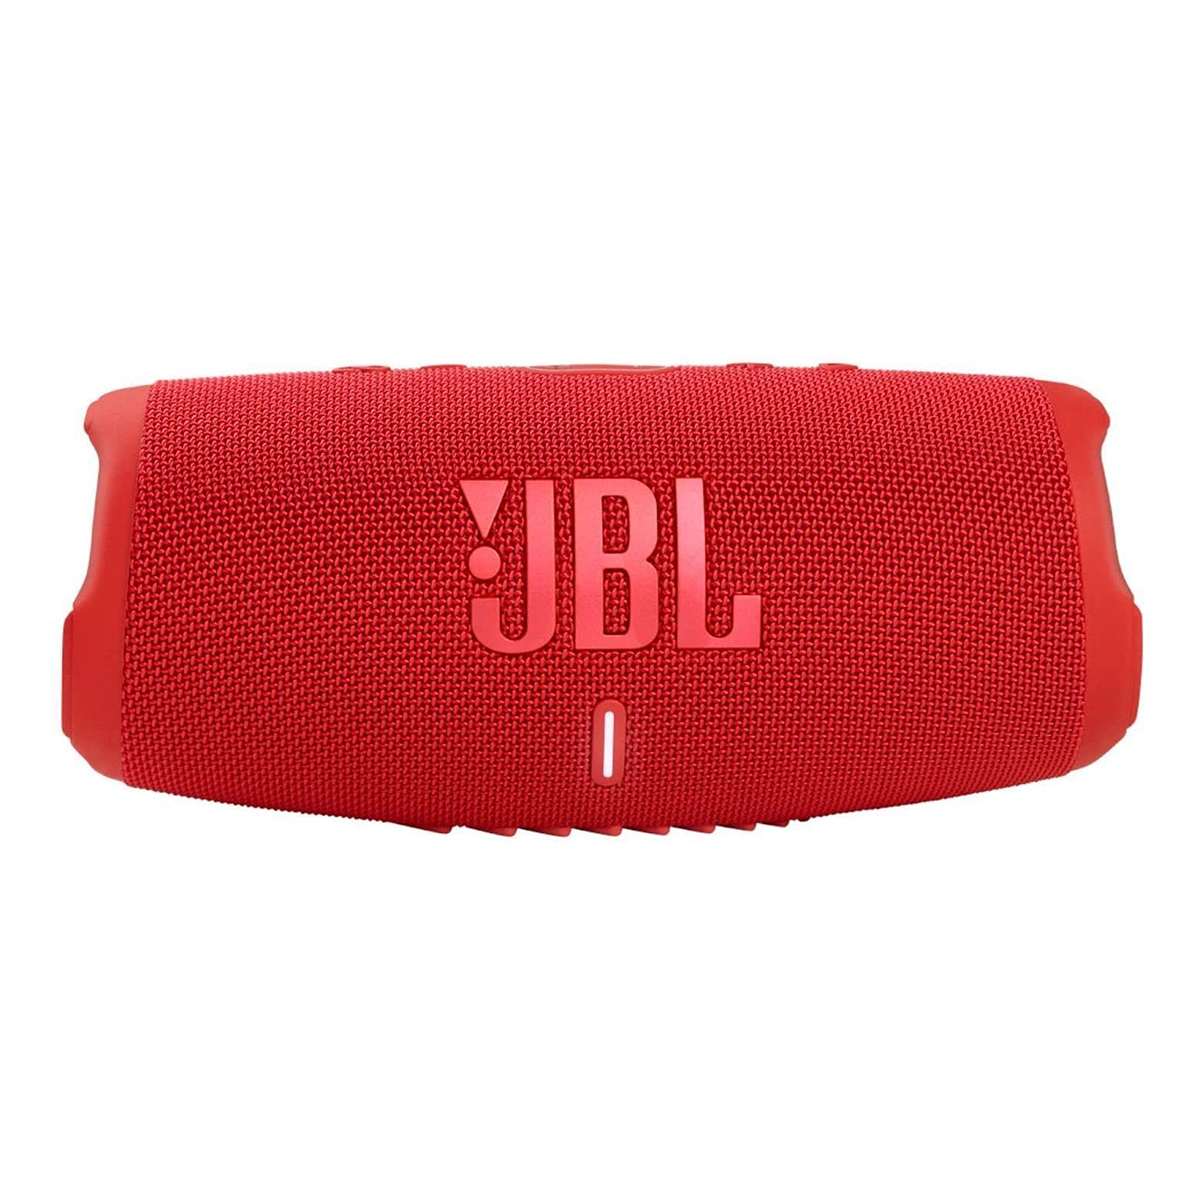 Loa JBL Charge 5 Red